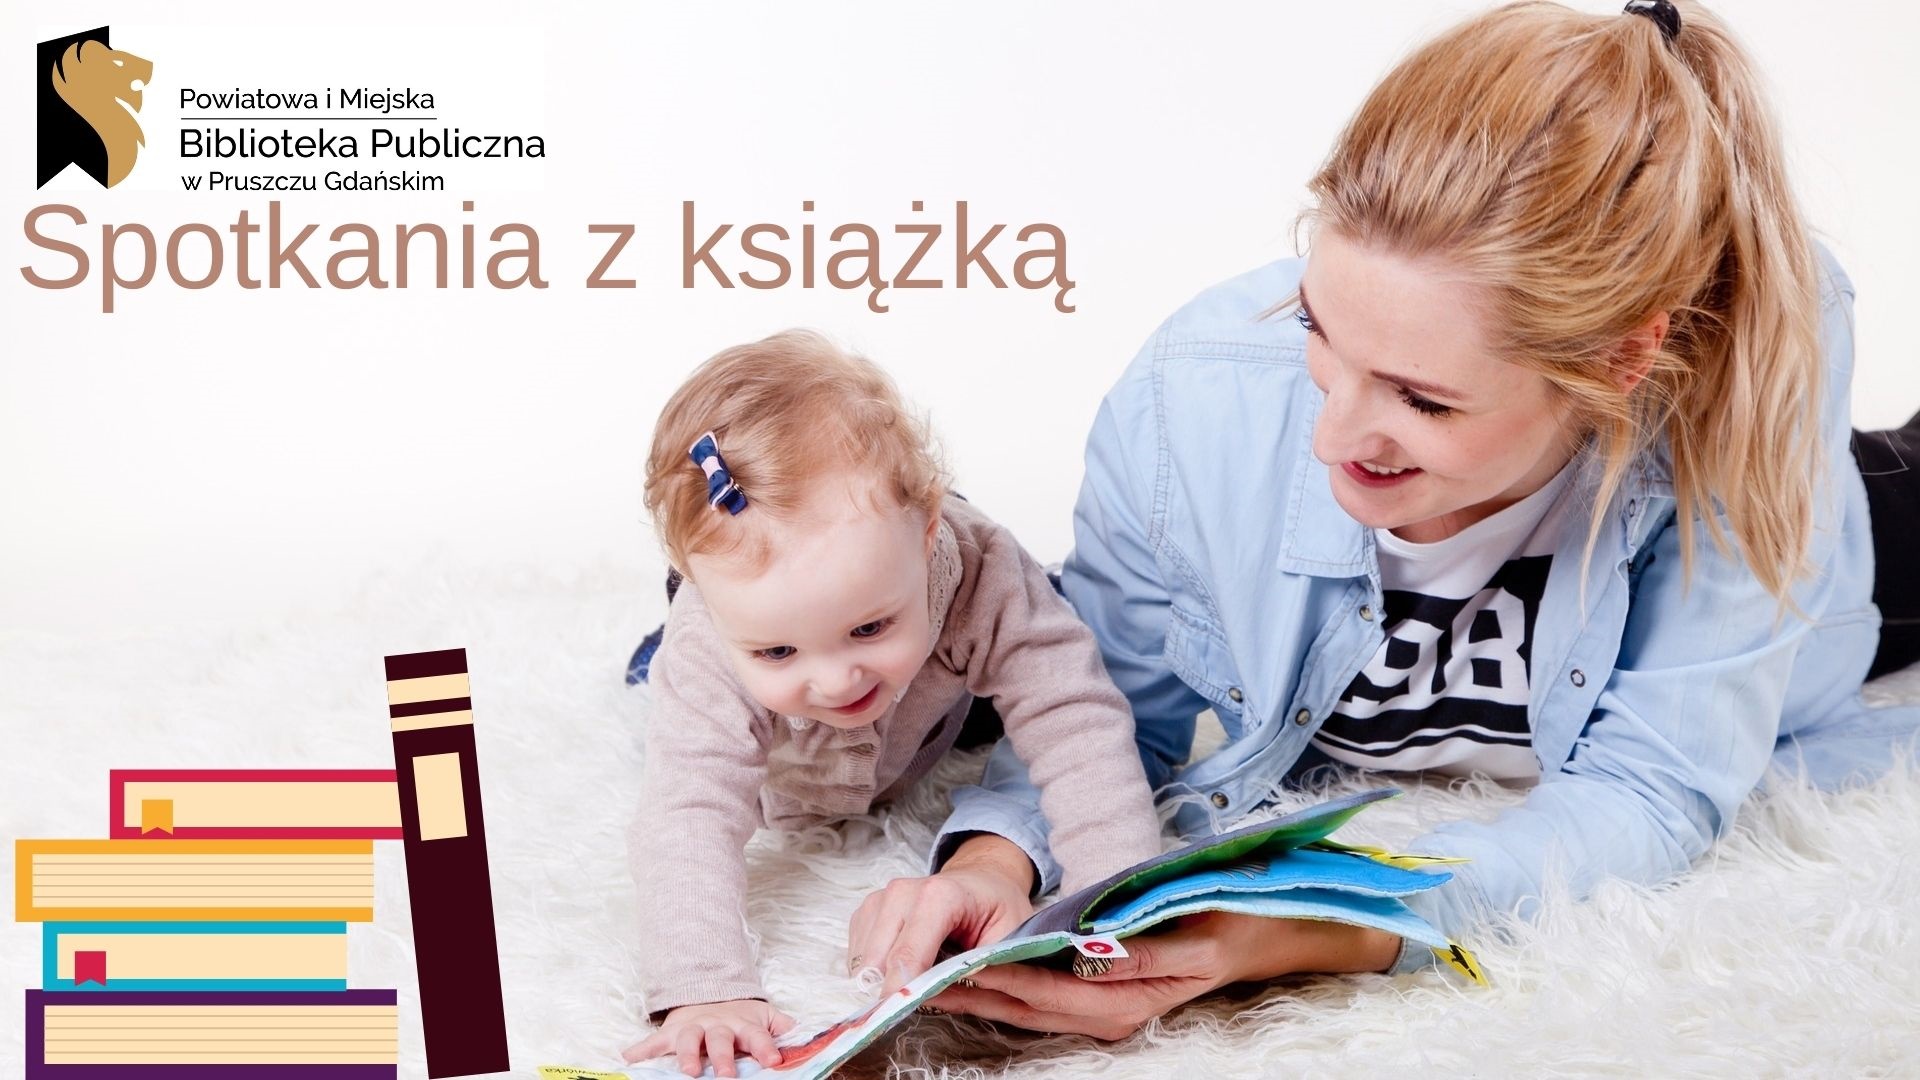 Napisy: Powiatowa i Miejska Biblioteka Publiczna w Pruszczu Gdańskim, spotkania z książką oraz grafika przedstawiająca książki, kobietę i małe dziecko patrzące w otwartą książkę.